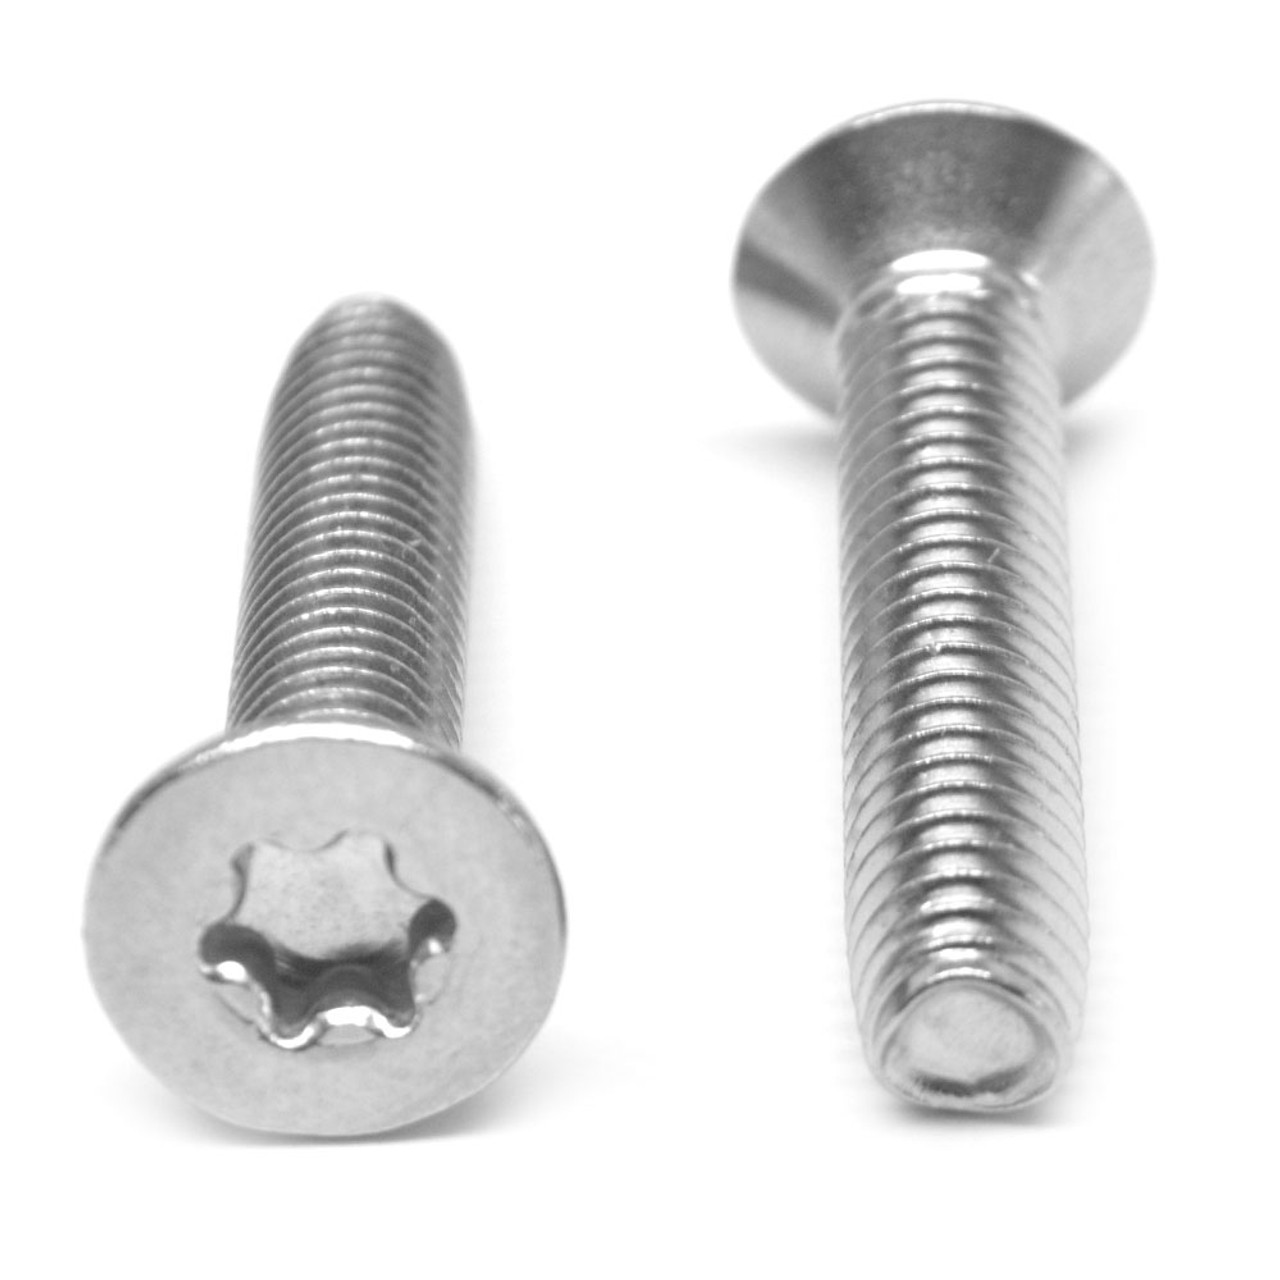 M3 x 0.50 x 20 MM Coarse Thread Thread Rolling Screw 6 Lobe Flat Head Stainless Steel 18-8 Wax